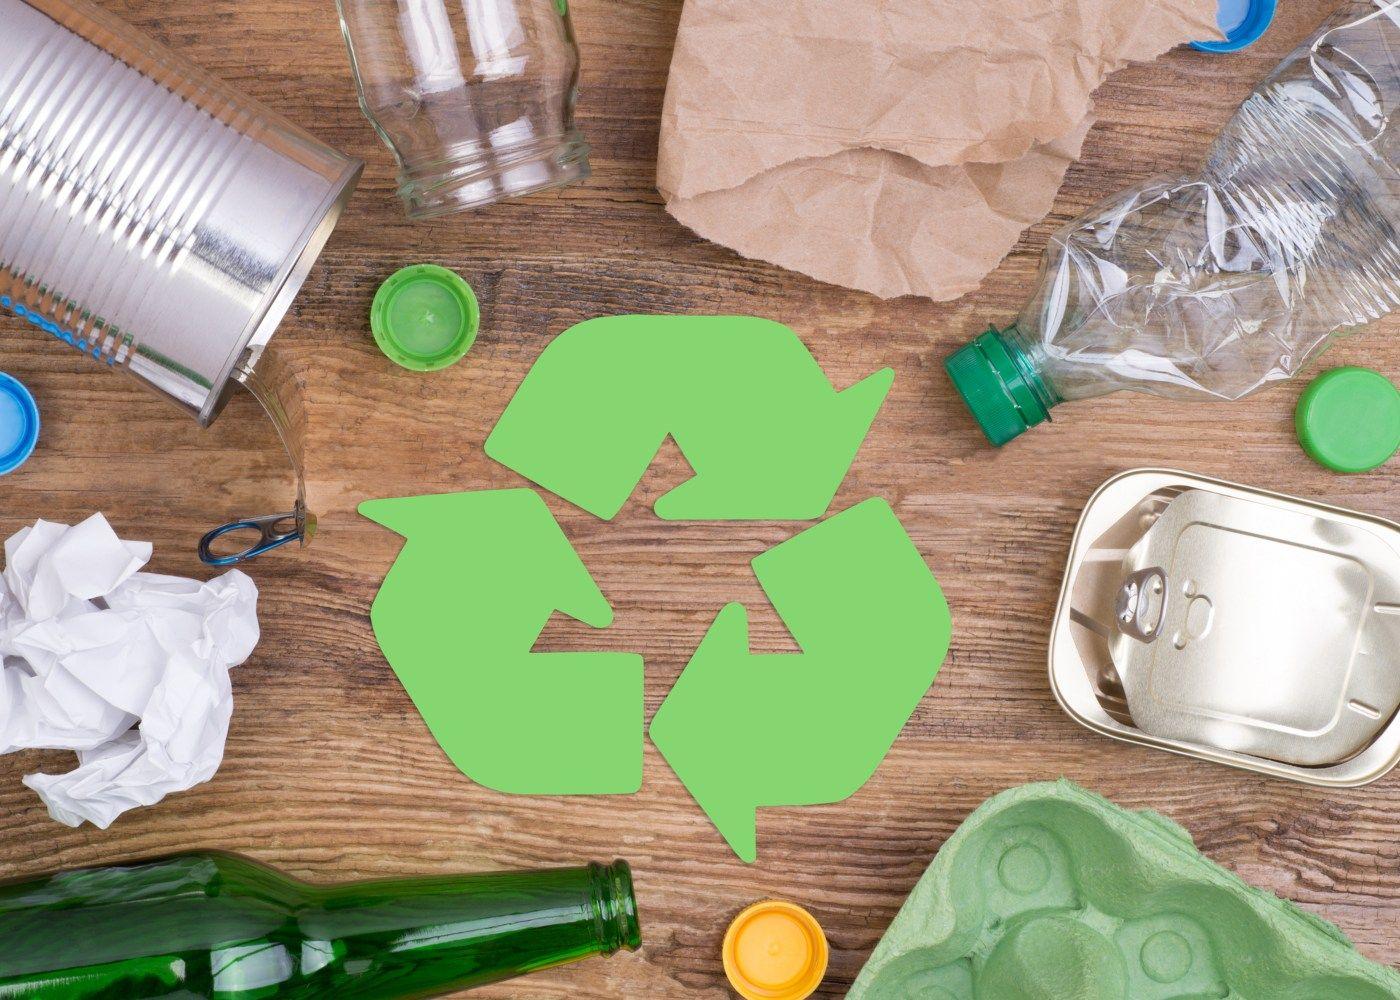 Dinheiro com lixo: é possível ganhar dinheiro através da reciclagem?